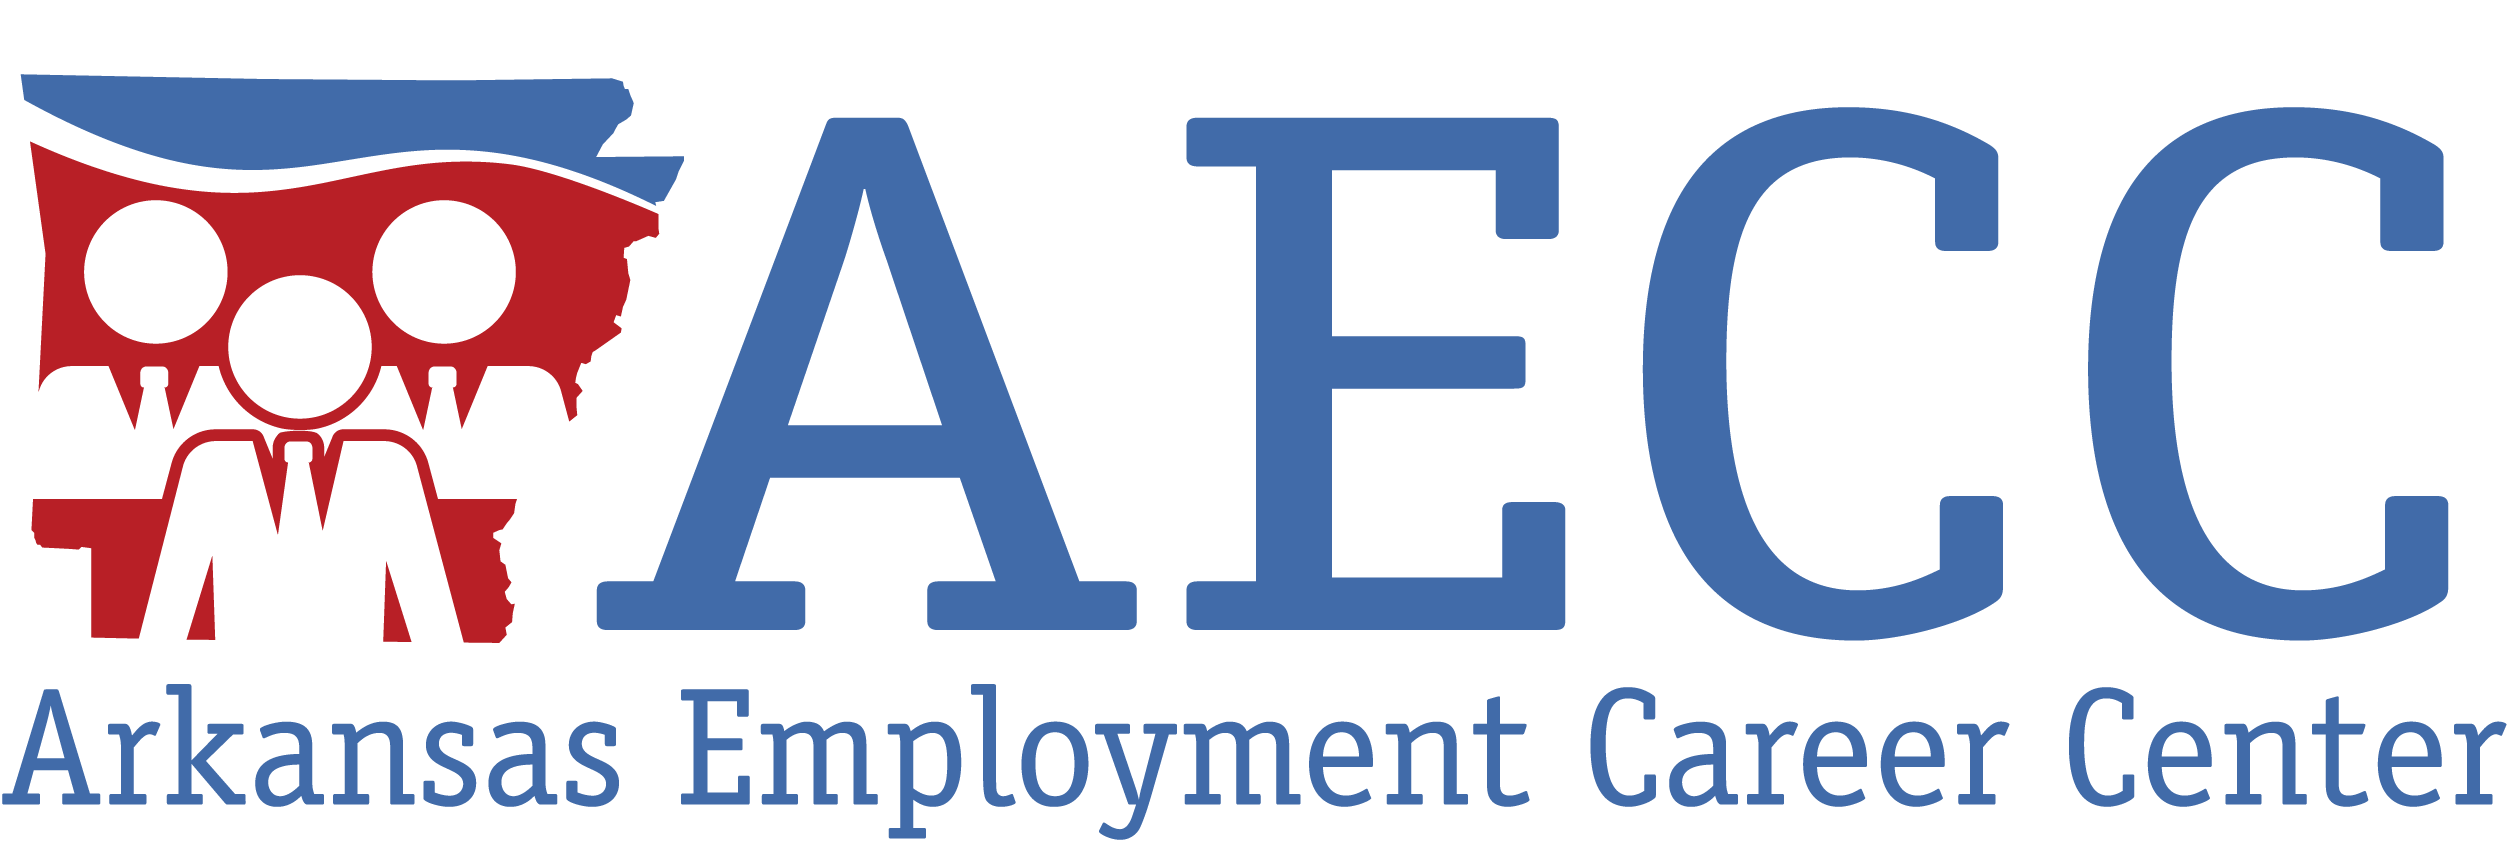 AECC Career School